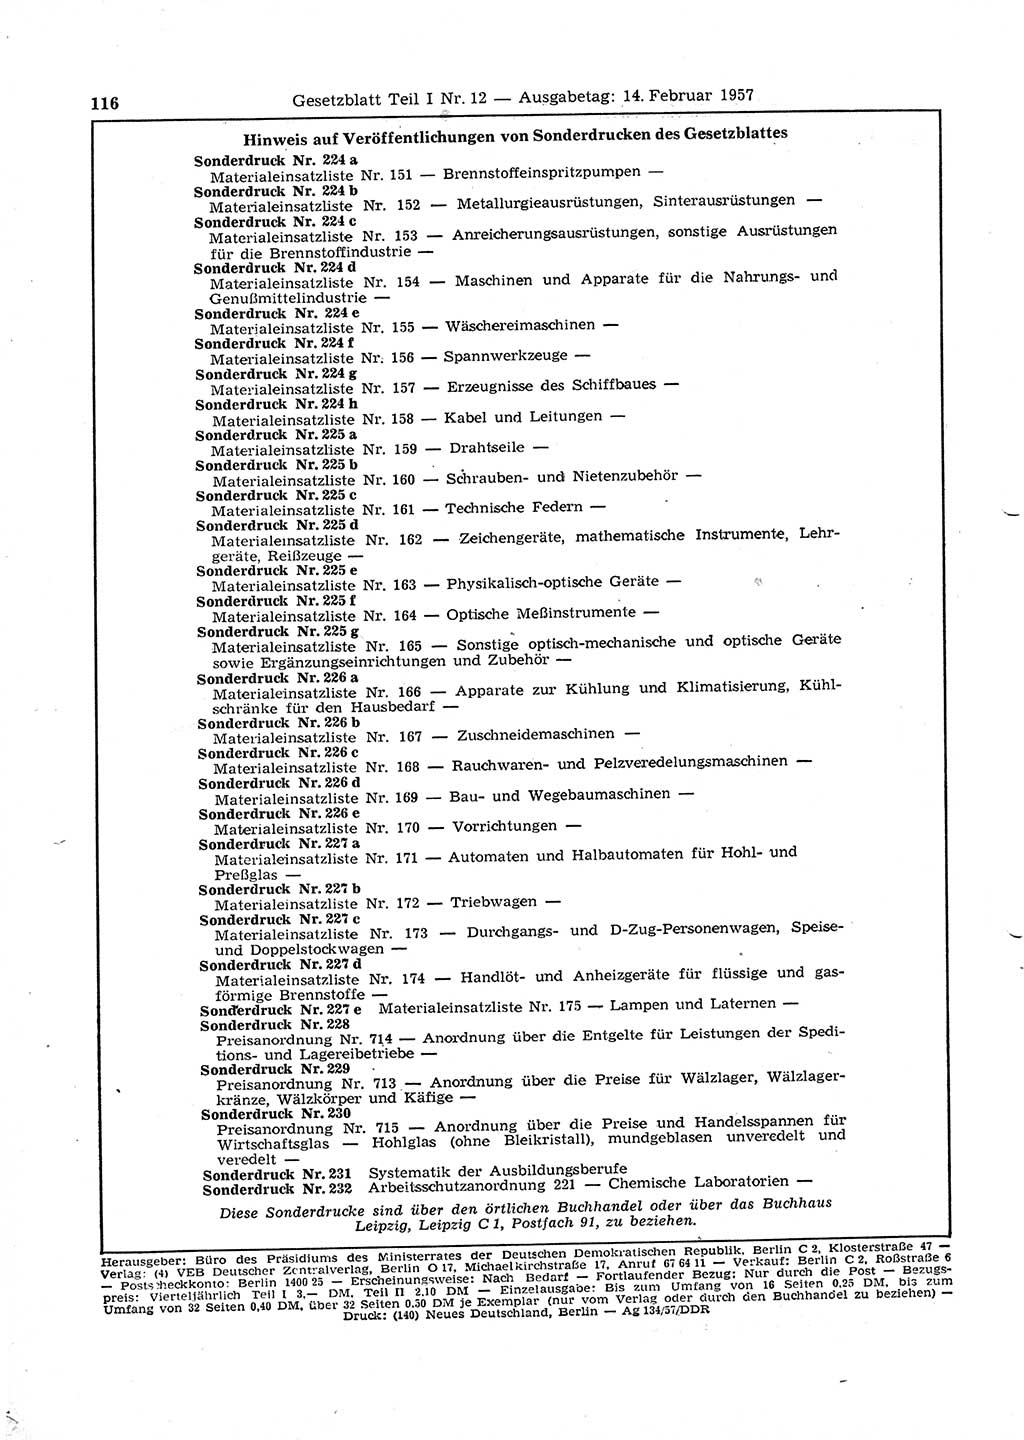 Gesetzblatt (GBl.) der Deutschen Demokratischen Republik (DDR) Teil Ⅰ 1957, Seite 116 (GBl. DDR Ⅰ 1957, S. 116)